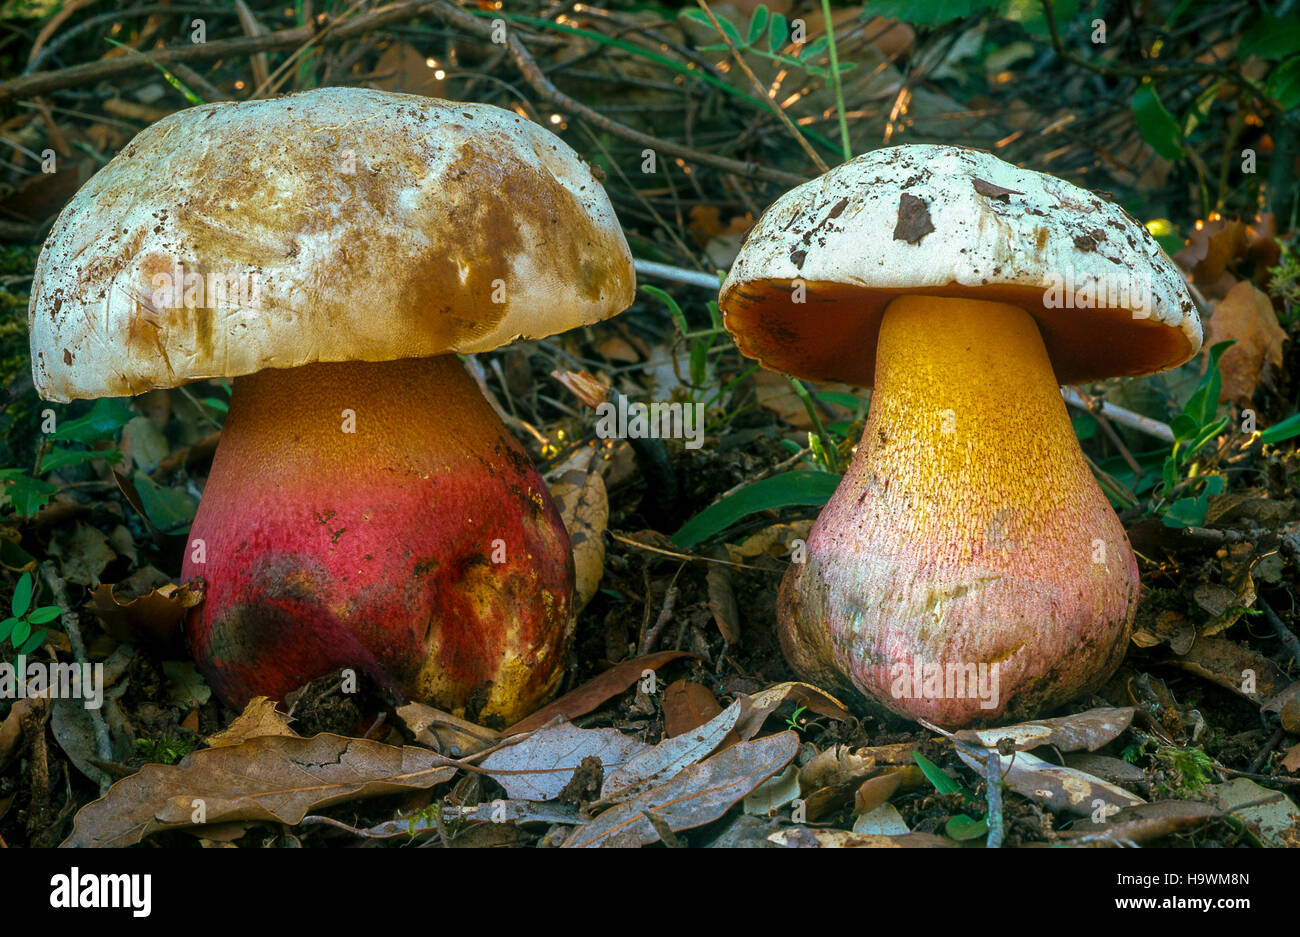 porcino malefico- mushrooms - Boletus Satanas Stock Photo